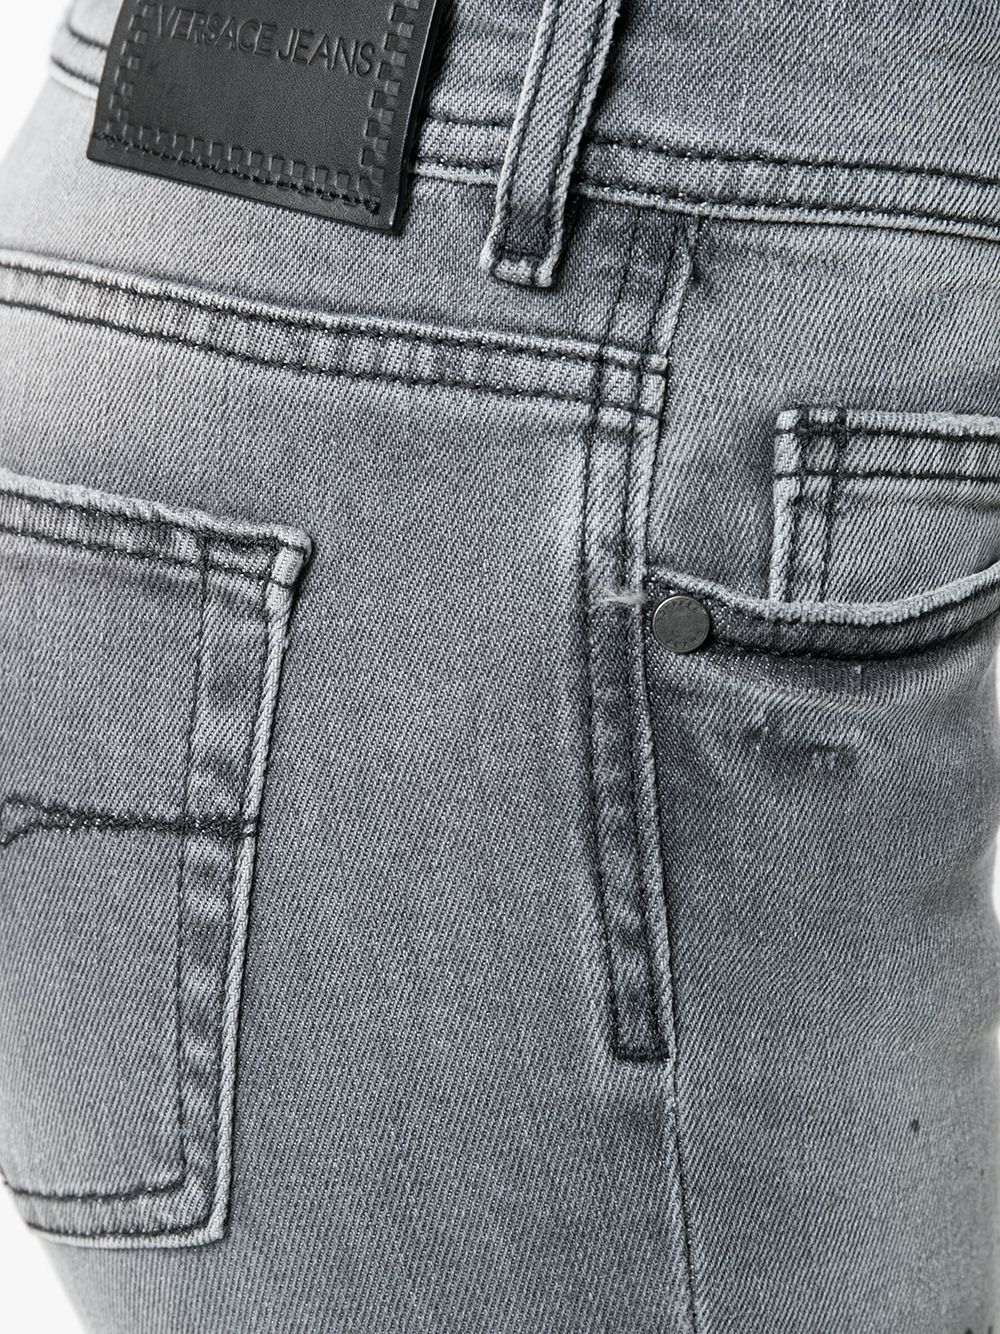 фото Versace jeans couture джинсы скинни с выцветшим эффектом